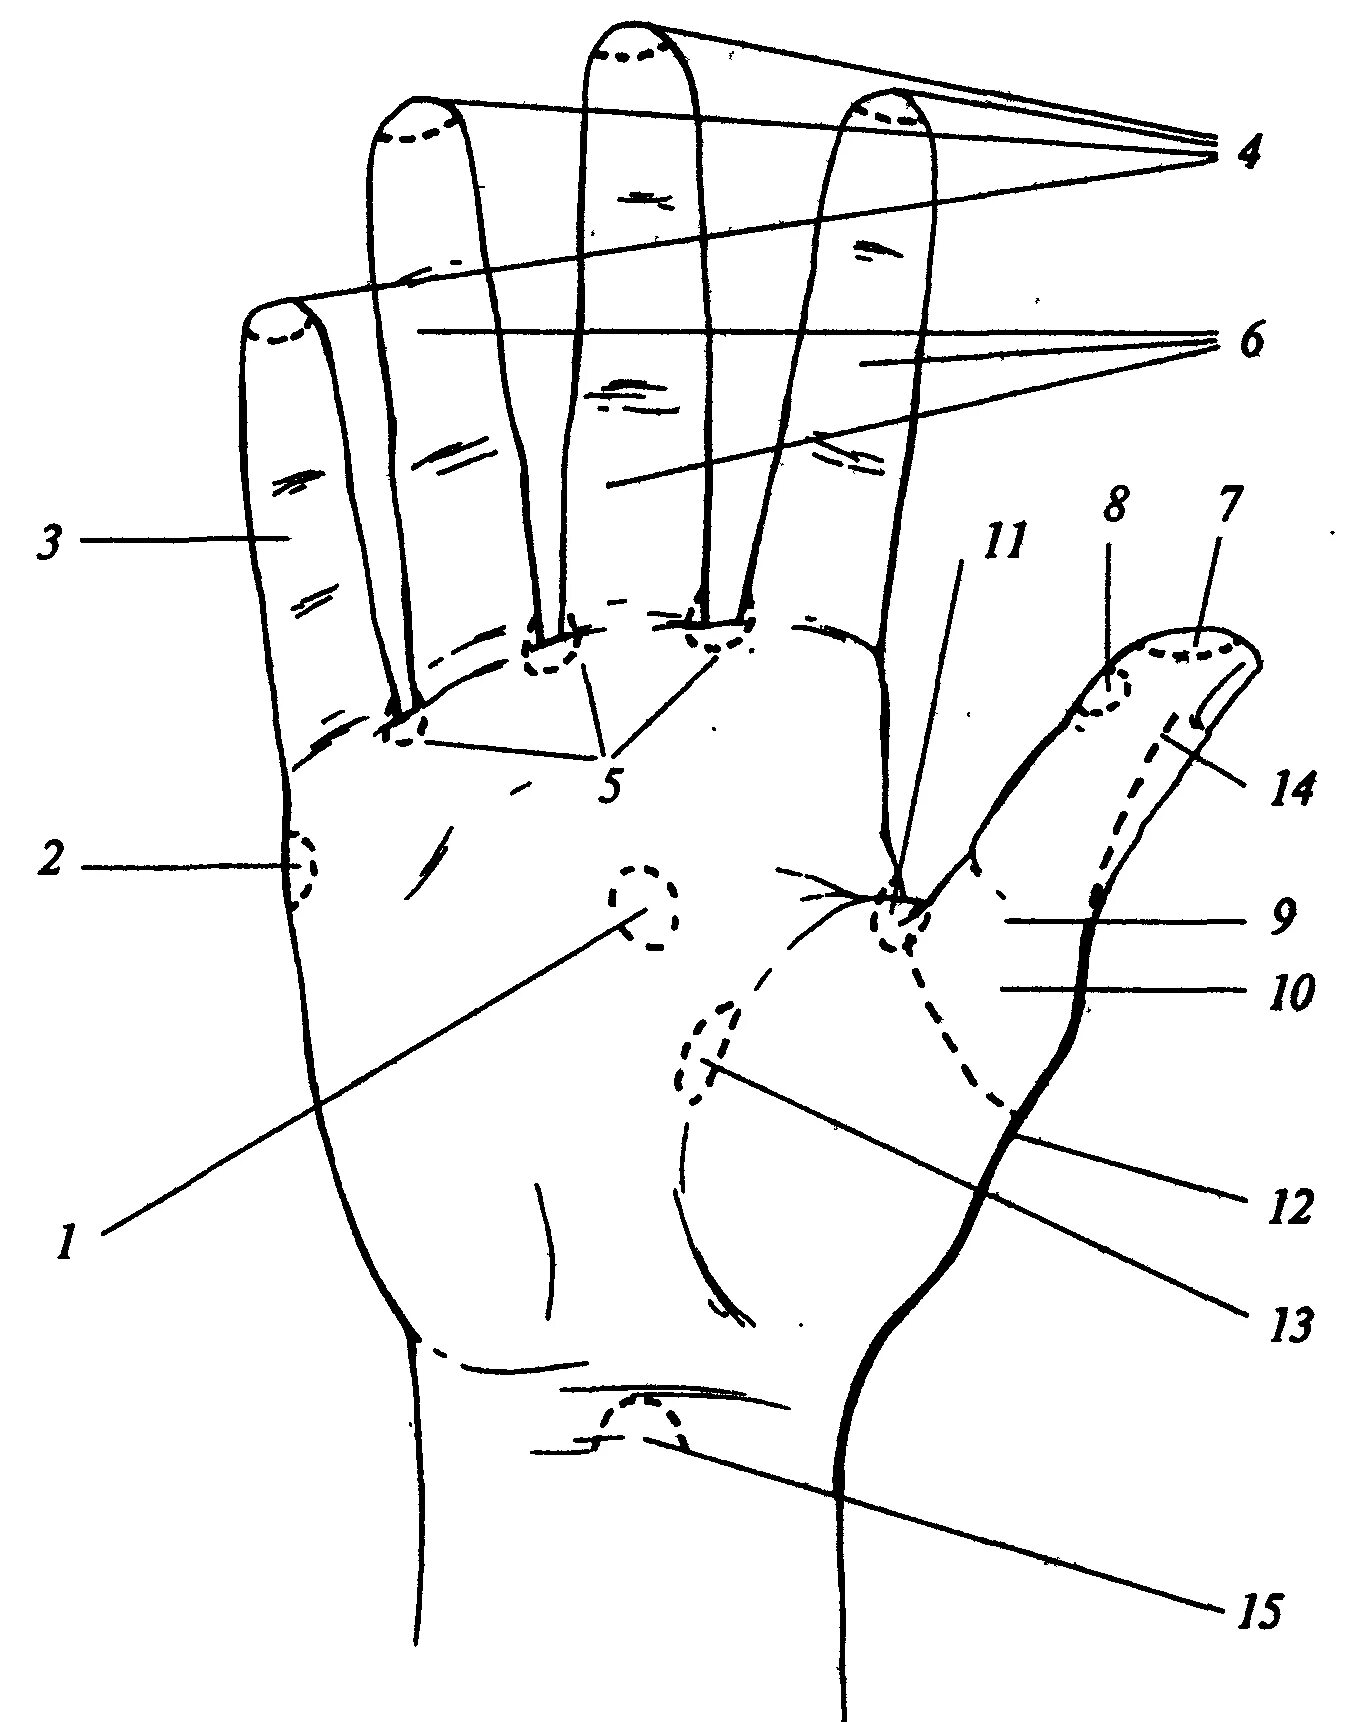 Местоположение рук. Рефлексогенные зоны кисти. Лимфоузлы на ладонях рук. Зоны руки. Рефлексогенные зоны кистей рук.